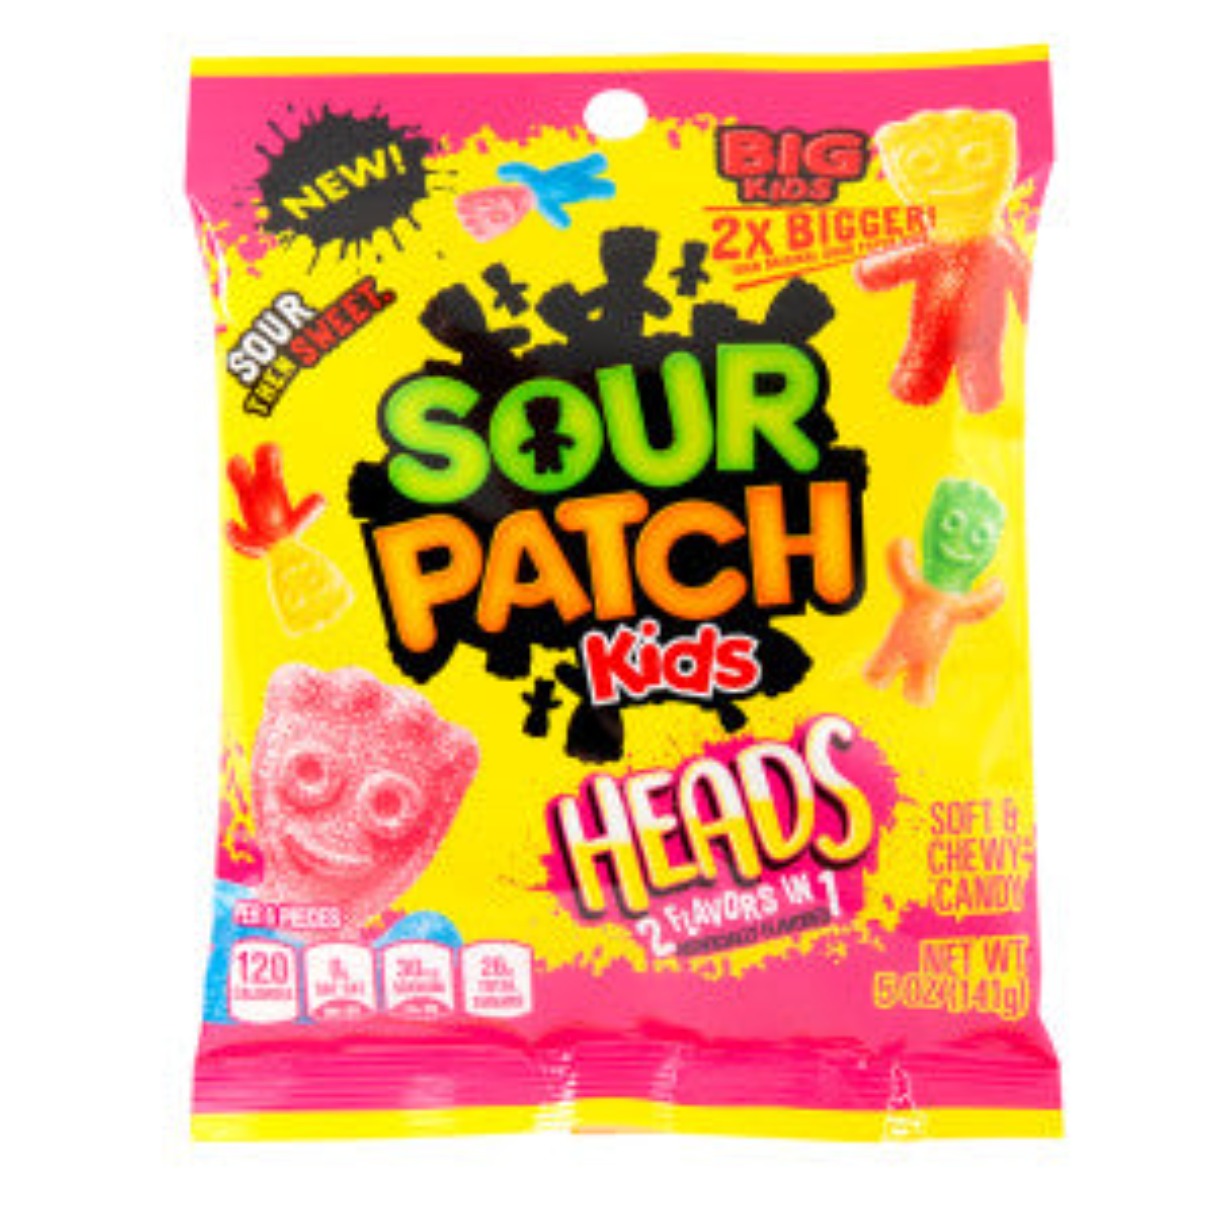 Sour Patch Kids Heads Bag 5oz - 12ct